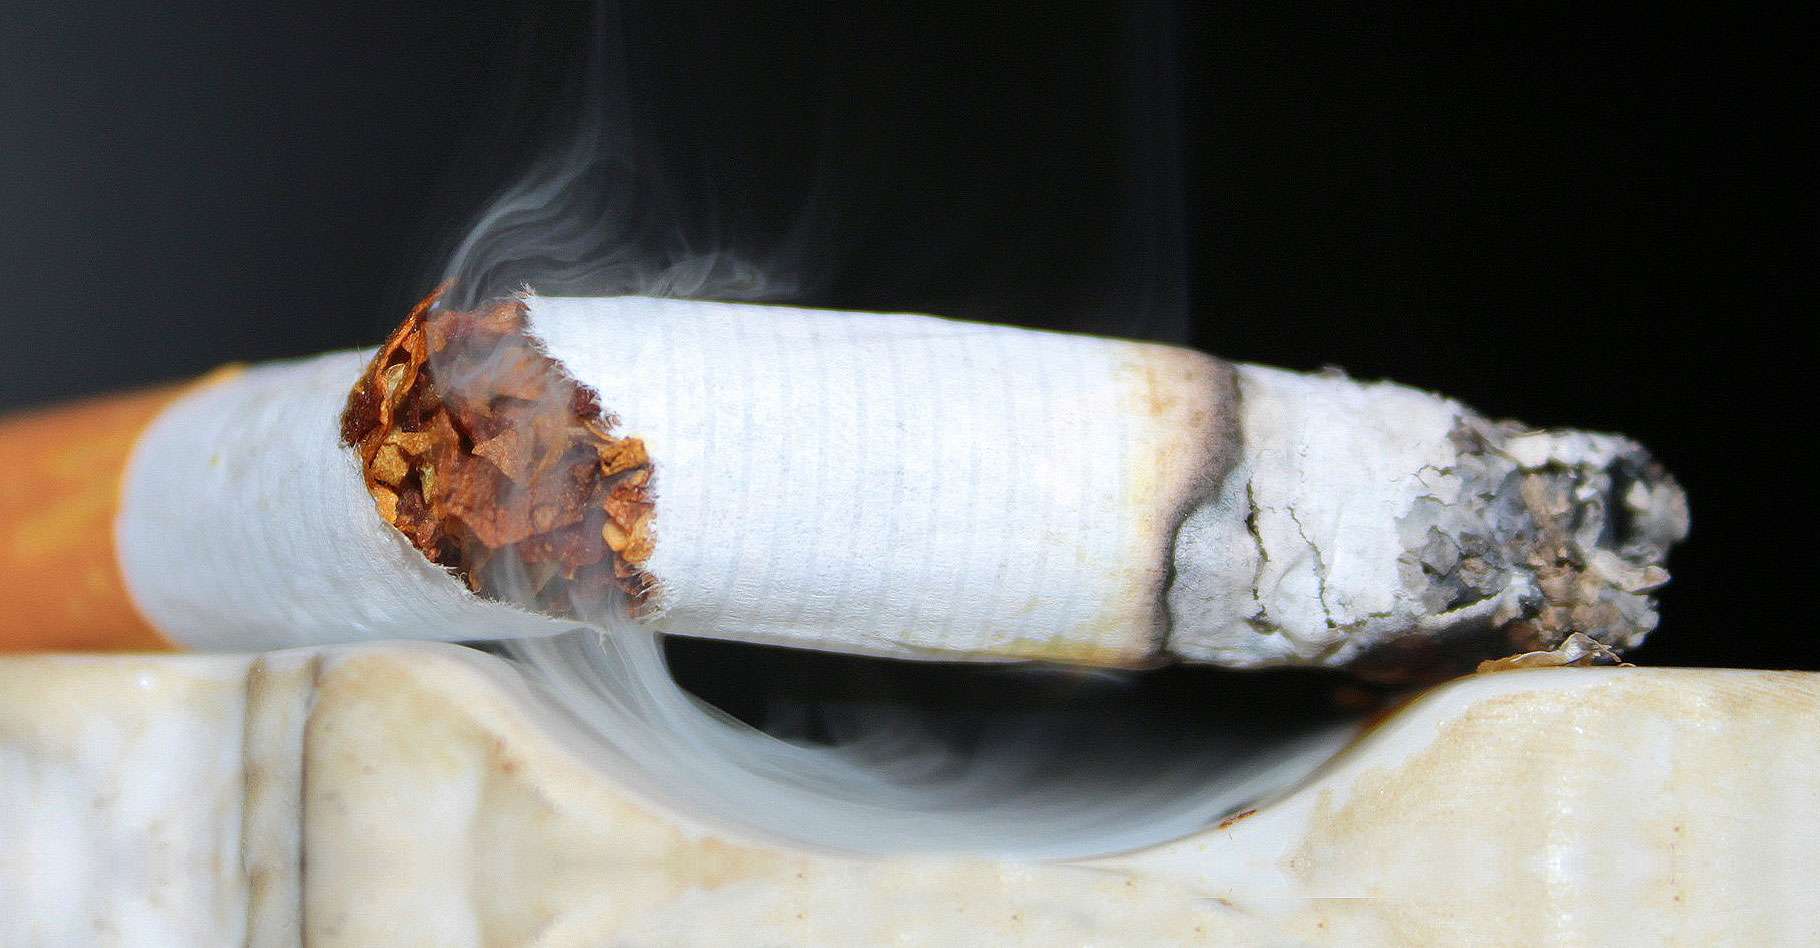 4 méthodes naturelles pour arrêter de fumer